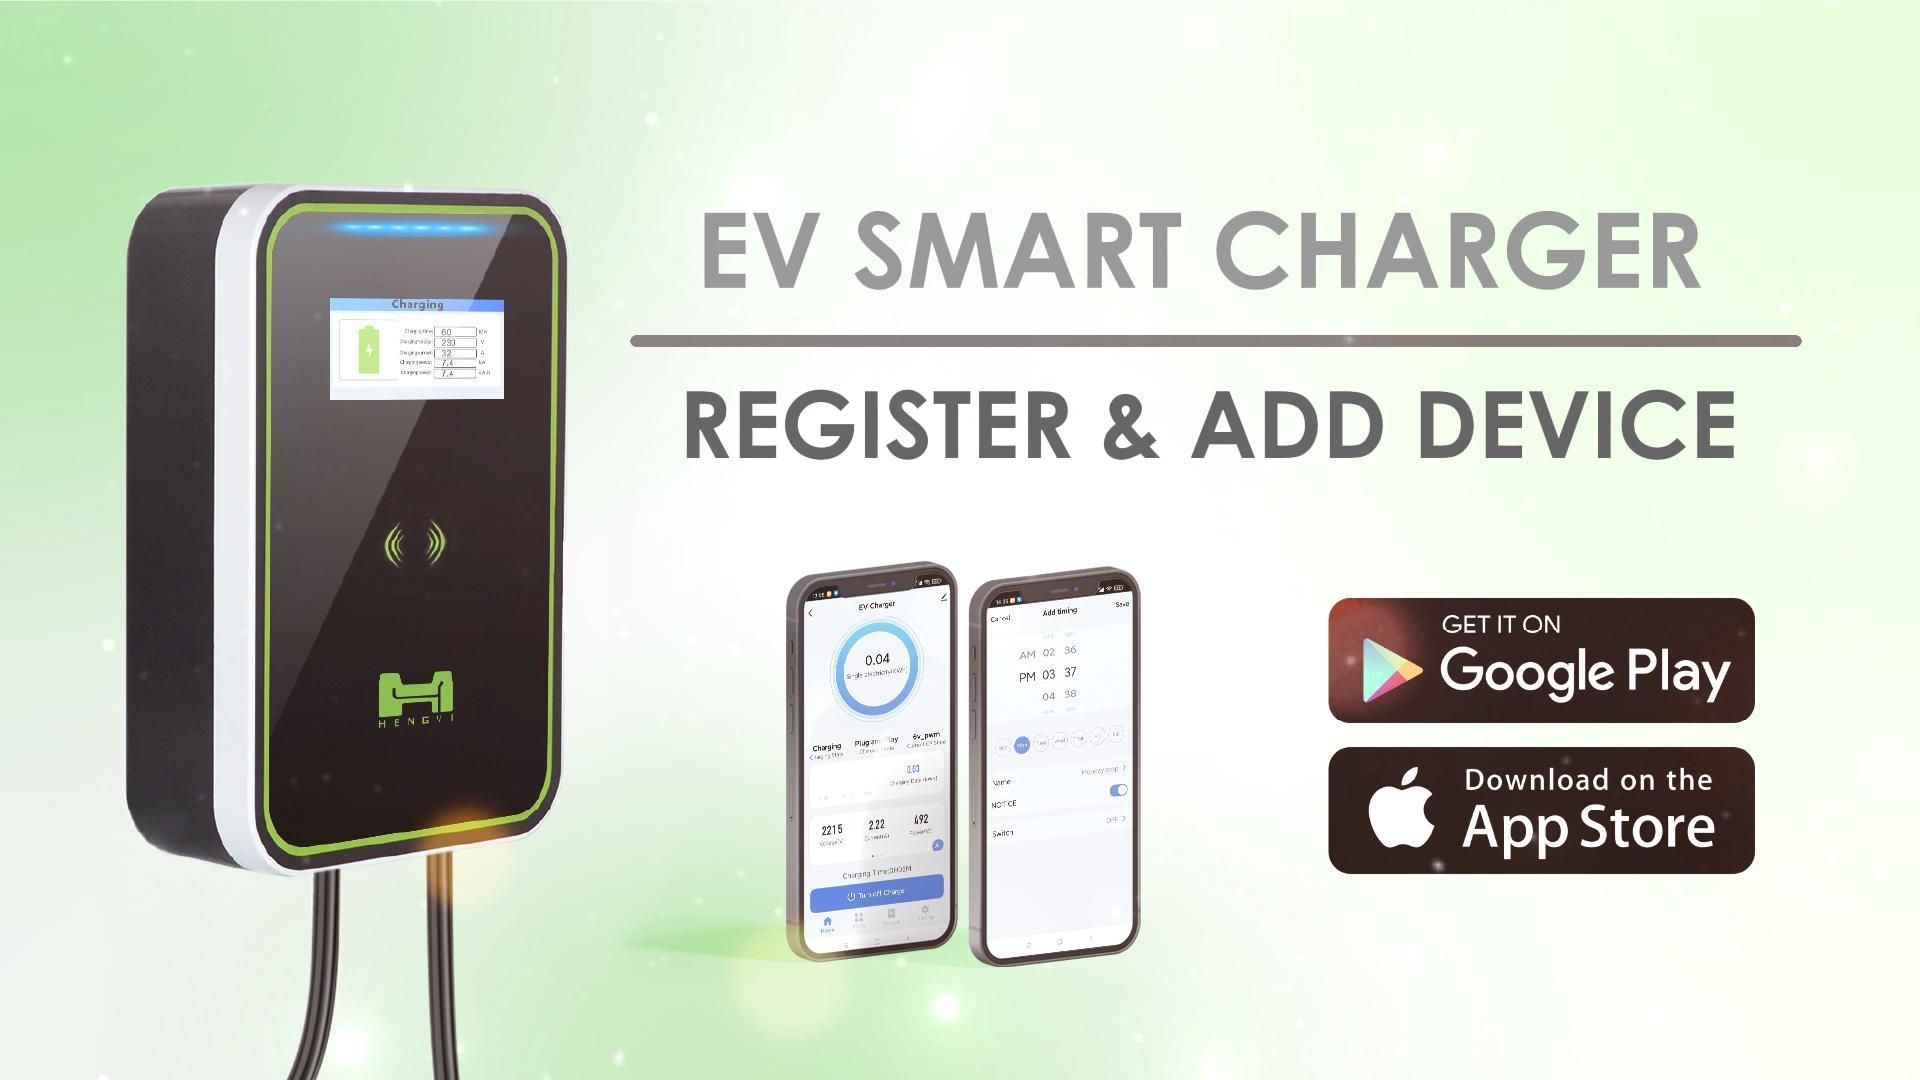 EV SMART CHARGER- REGISTER & ADD DEVICE